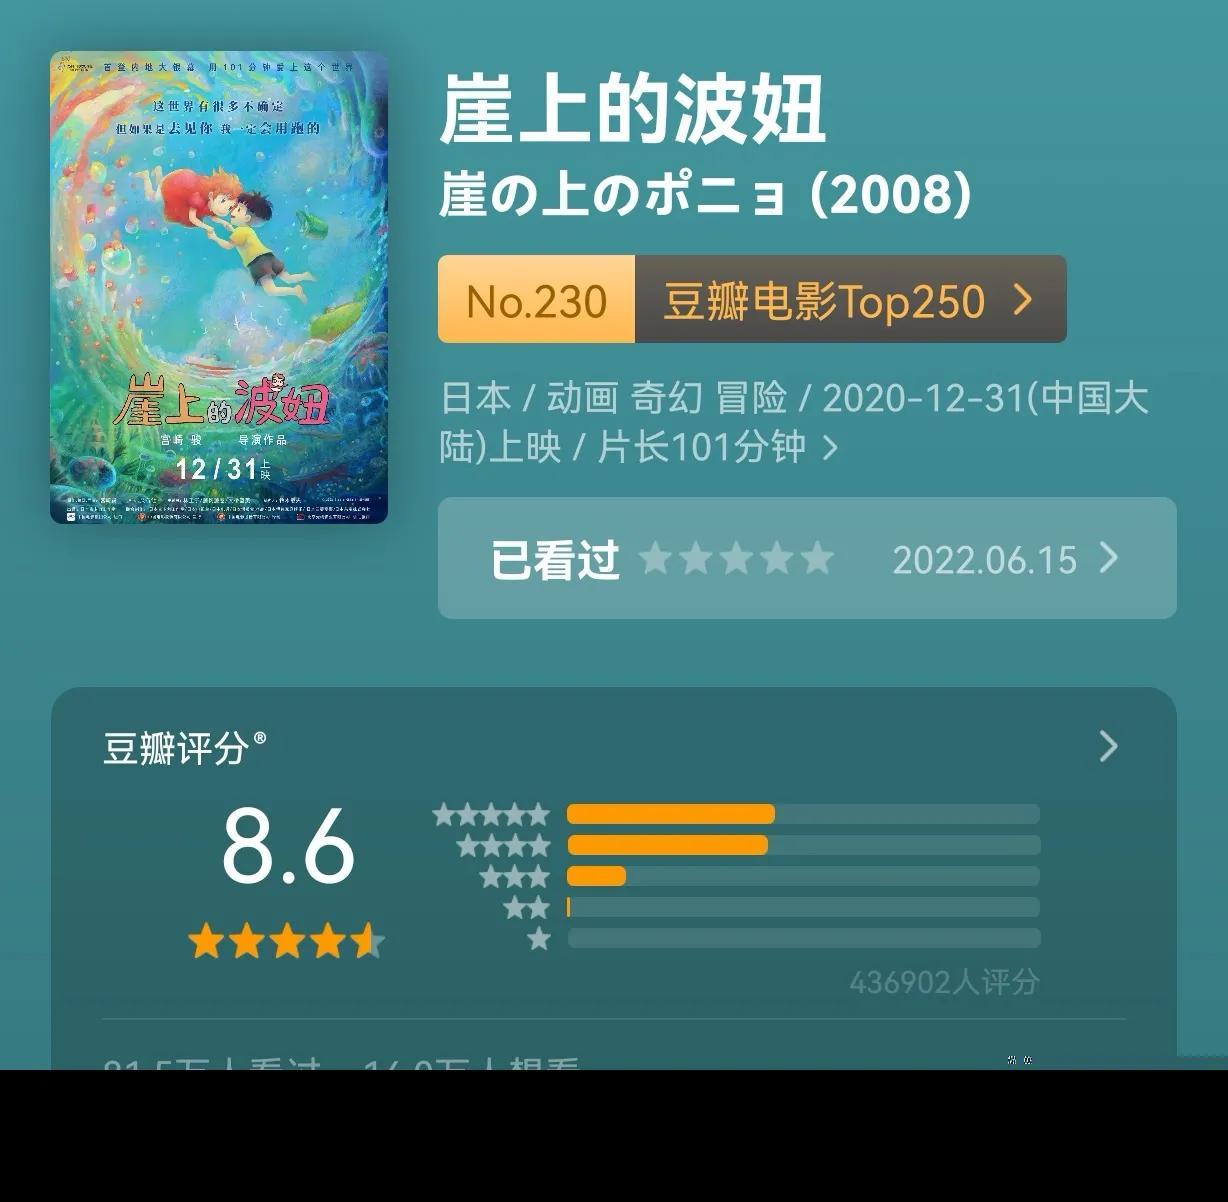 宫崎骏28部动画电影集合,宫崎骏的所有作品电影大全